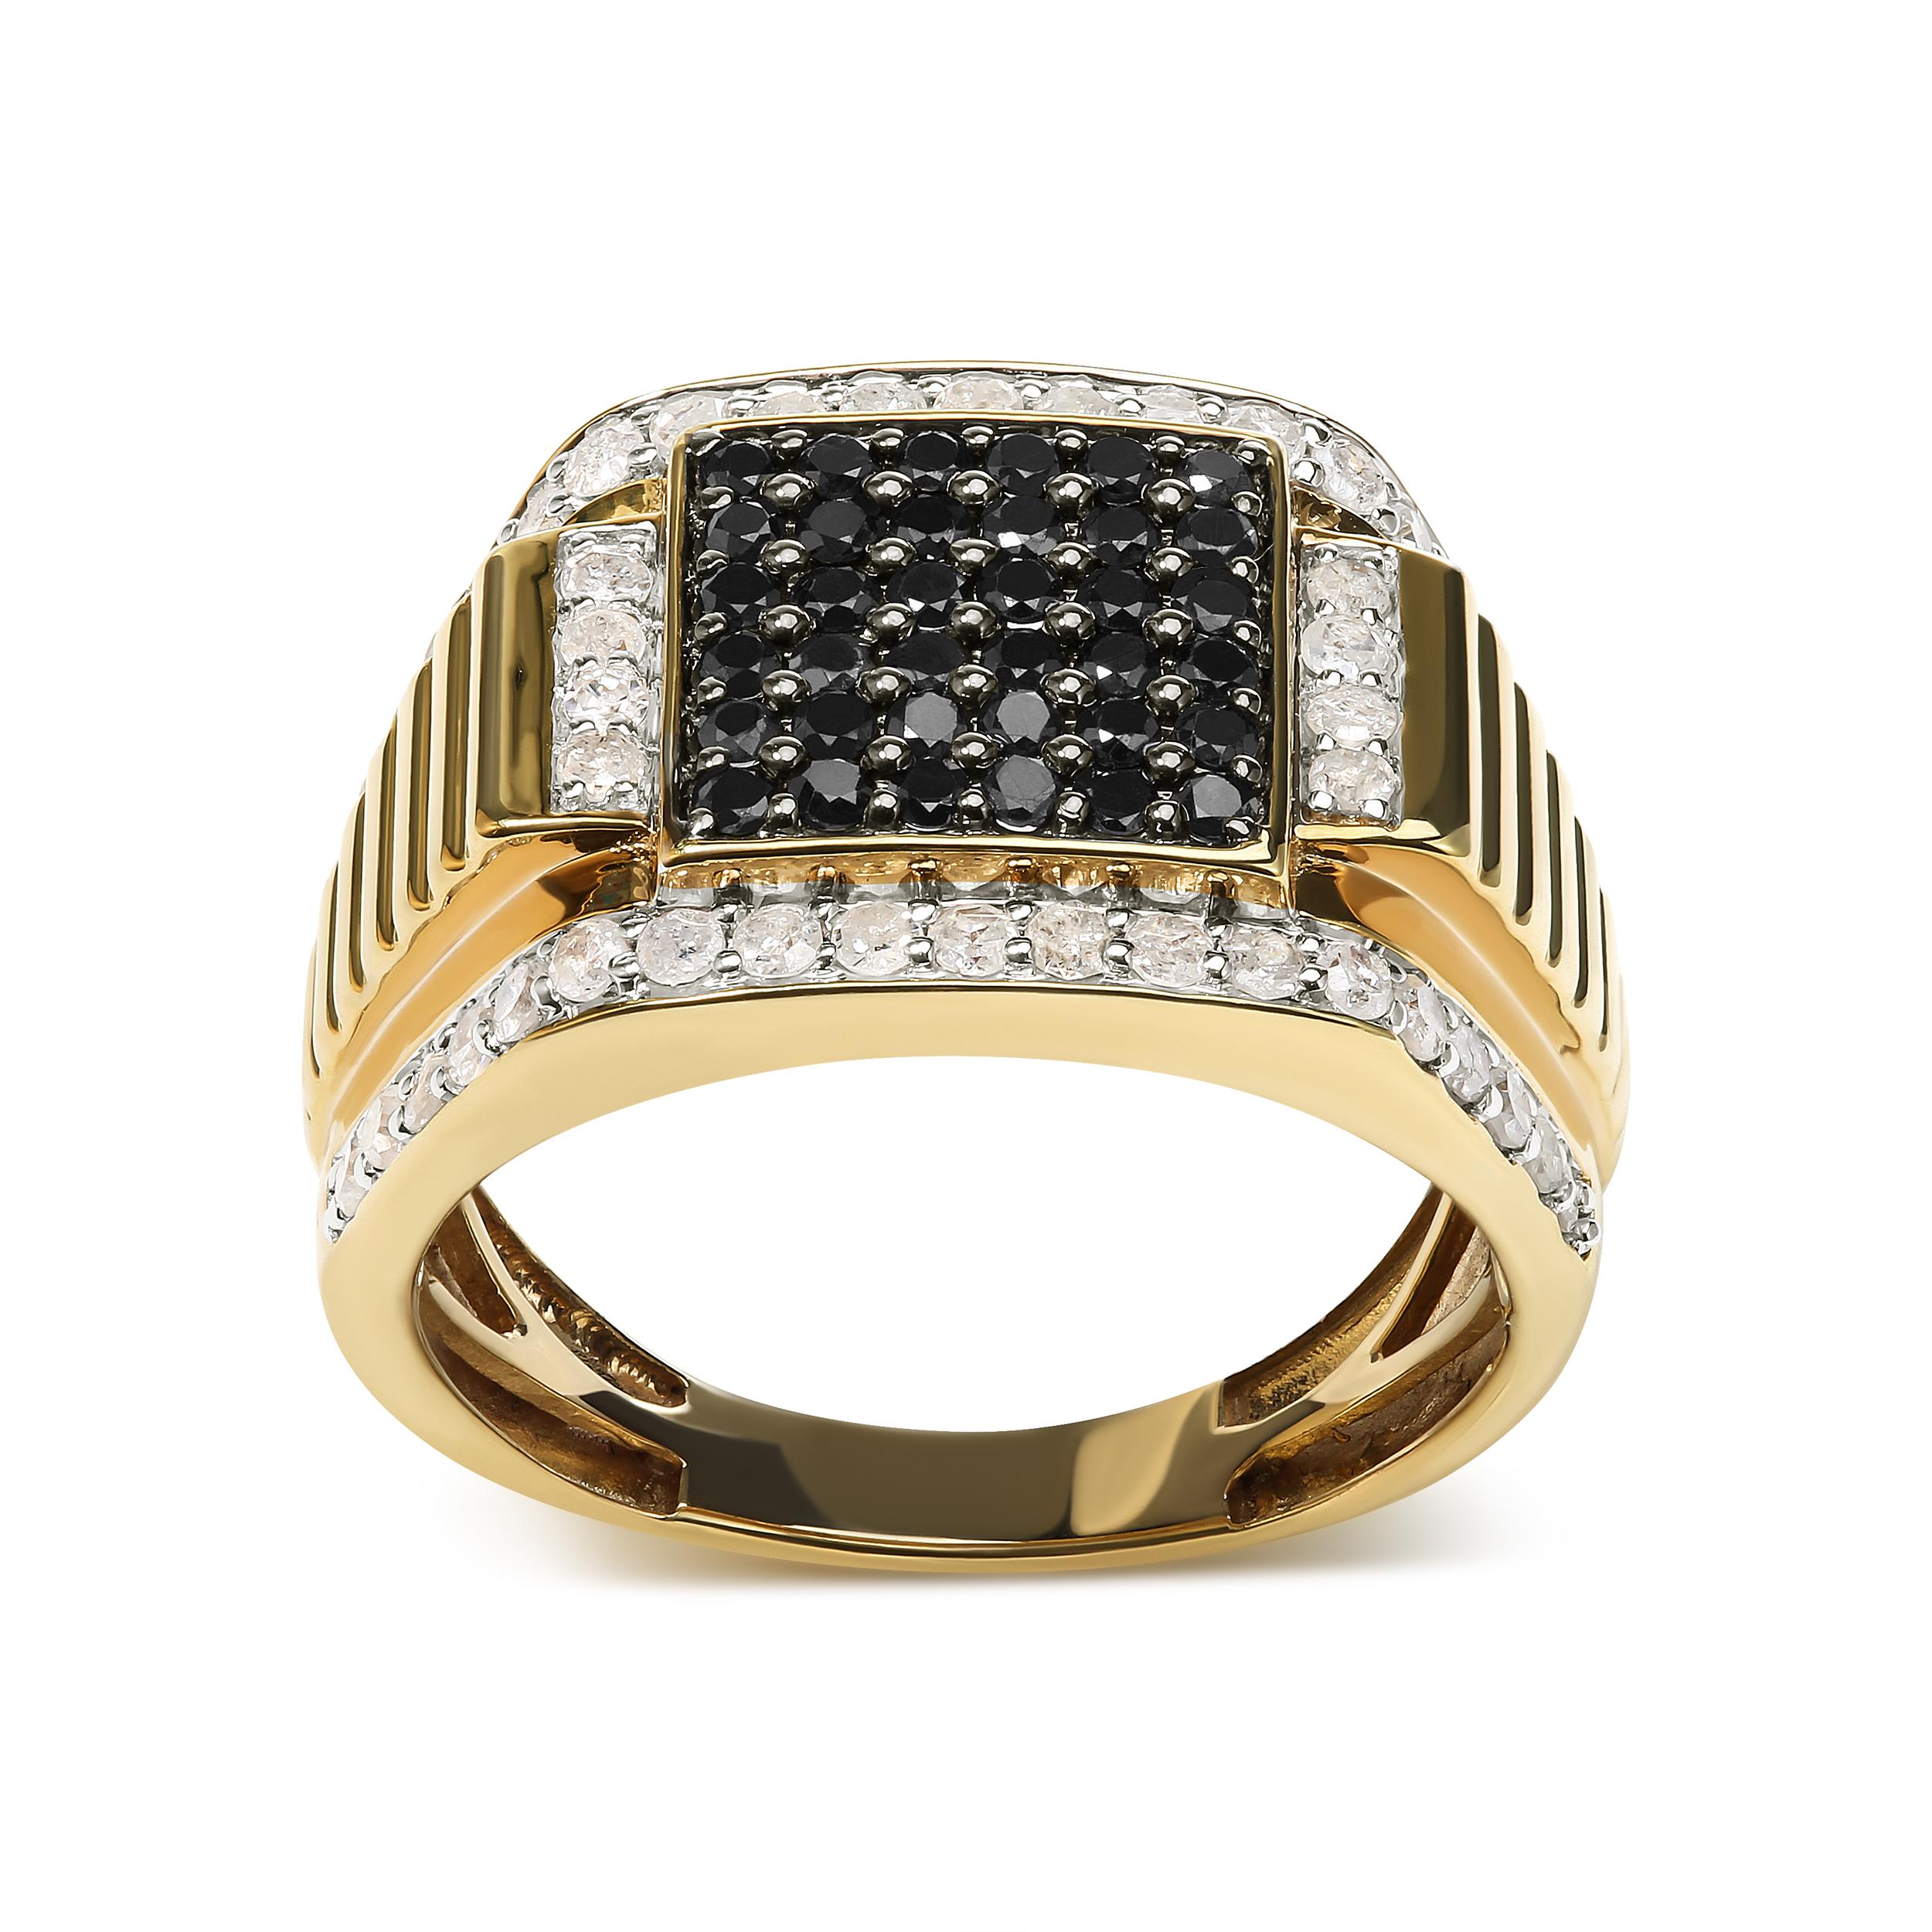 Dieser Herren-Cluster-Ring aus 10 Karat Gelbgold ist ein Meisterwerk, das Eleganz und Raffinesse ausstrahlt. Er ist ein wahres Symbol für raffinierte Männlichkeit. Dieser mit viel Liebe zum Detail gefertigte Ring besticht durch 82 runde, natürliche